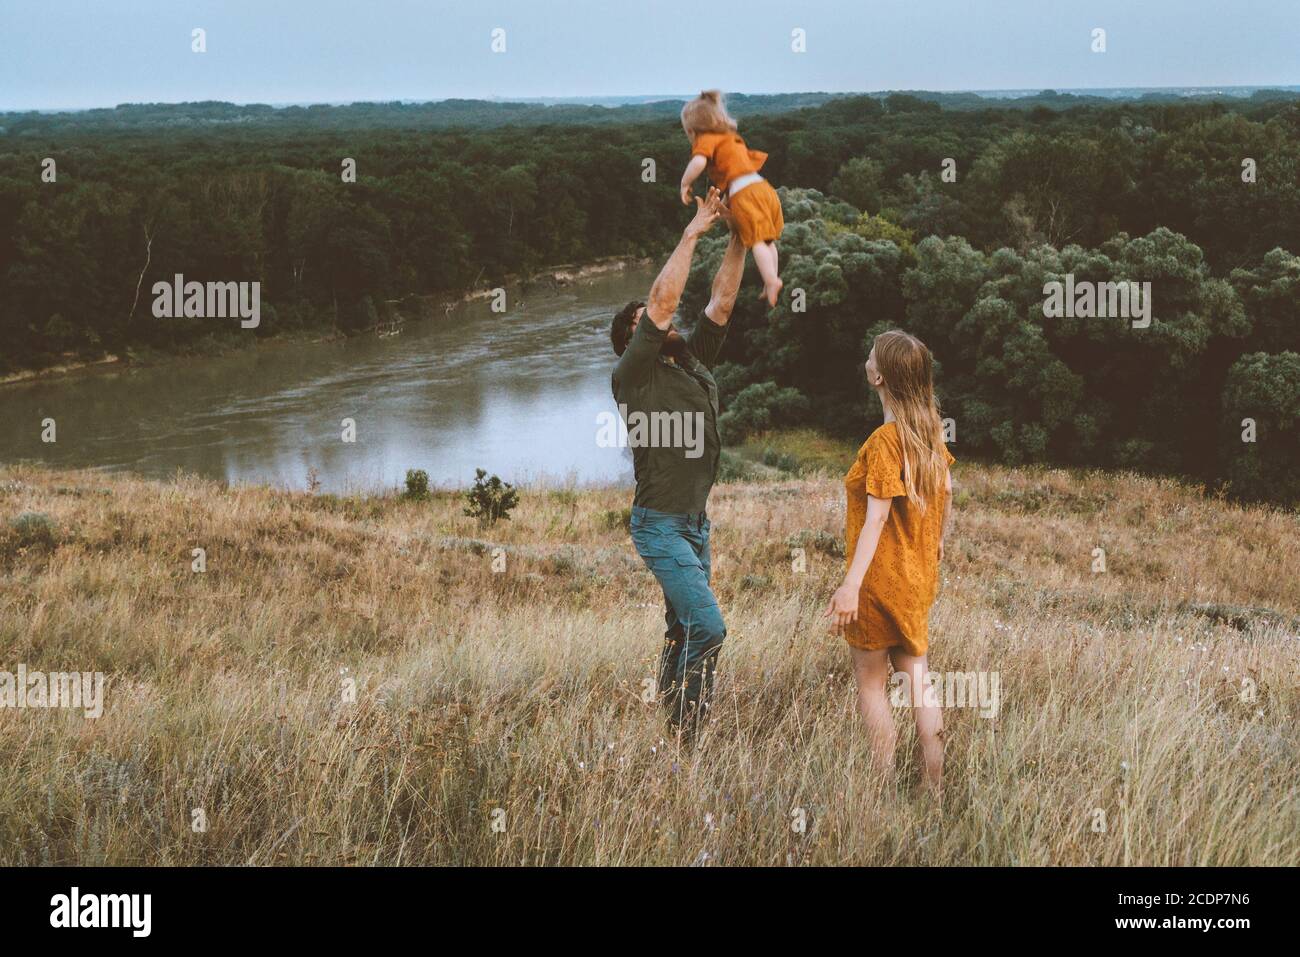 Père de famille et mère avec enfant jouant avec les parents en plein air bébé ayant plaisir actif sain style de vie heureux émotions rivière et paysage forestier Banque D'Images